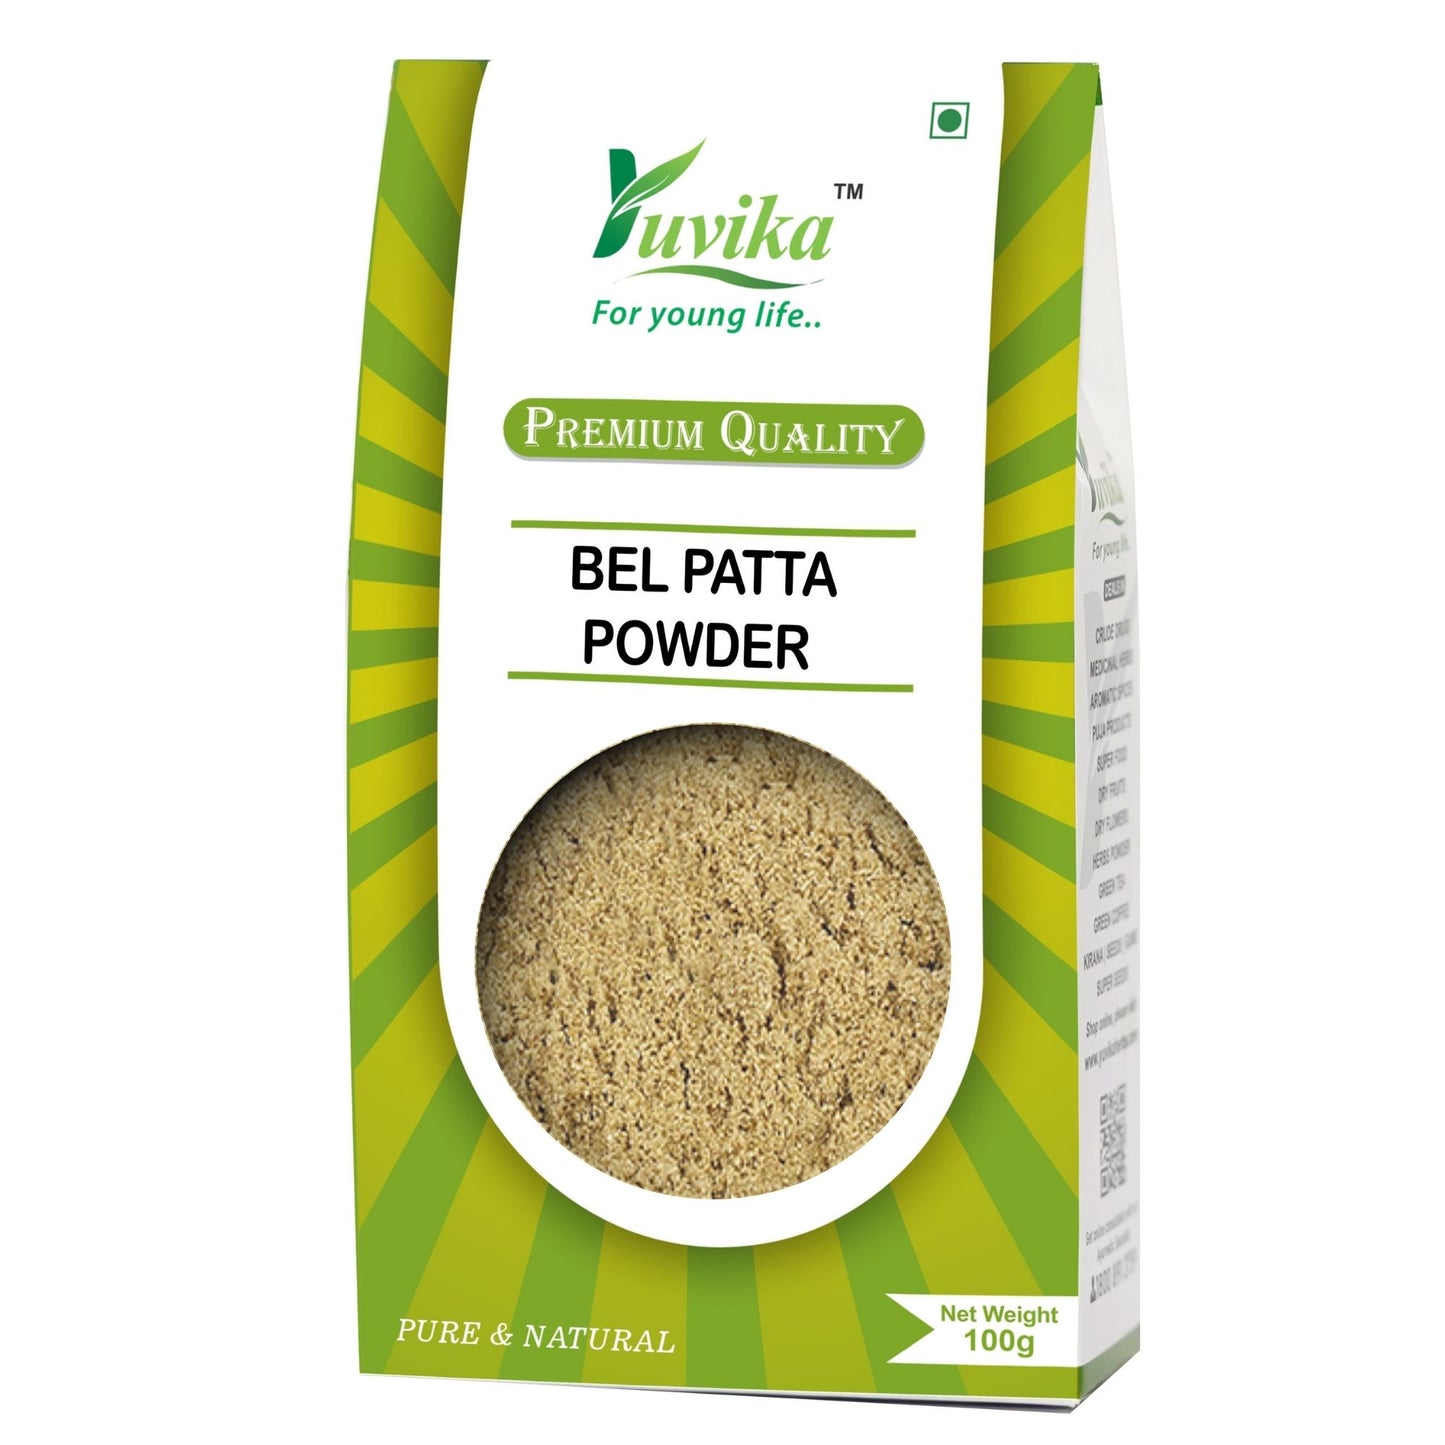 Bel Patta Powder - Bel Patra Powder - Bilva Bel Leaf - Aegle Marmelos Powder (100g)